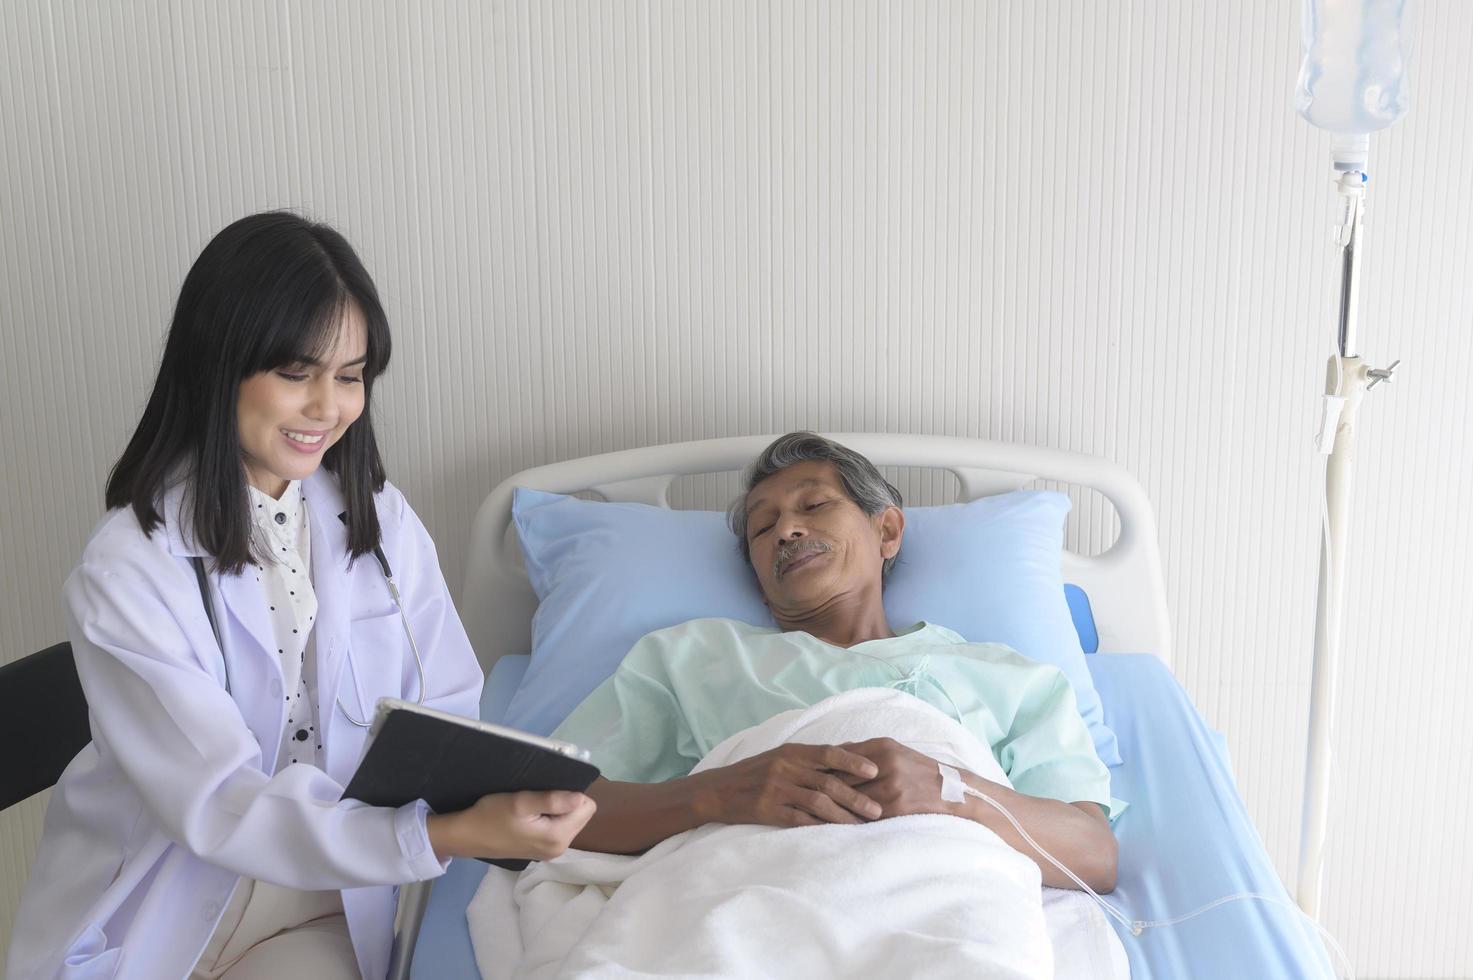 El paciente masculino asiático mayor está consultando y visitando al médico en el hospital. foto